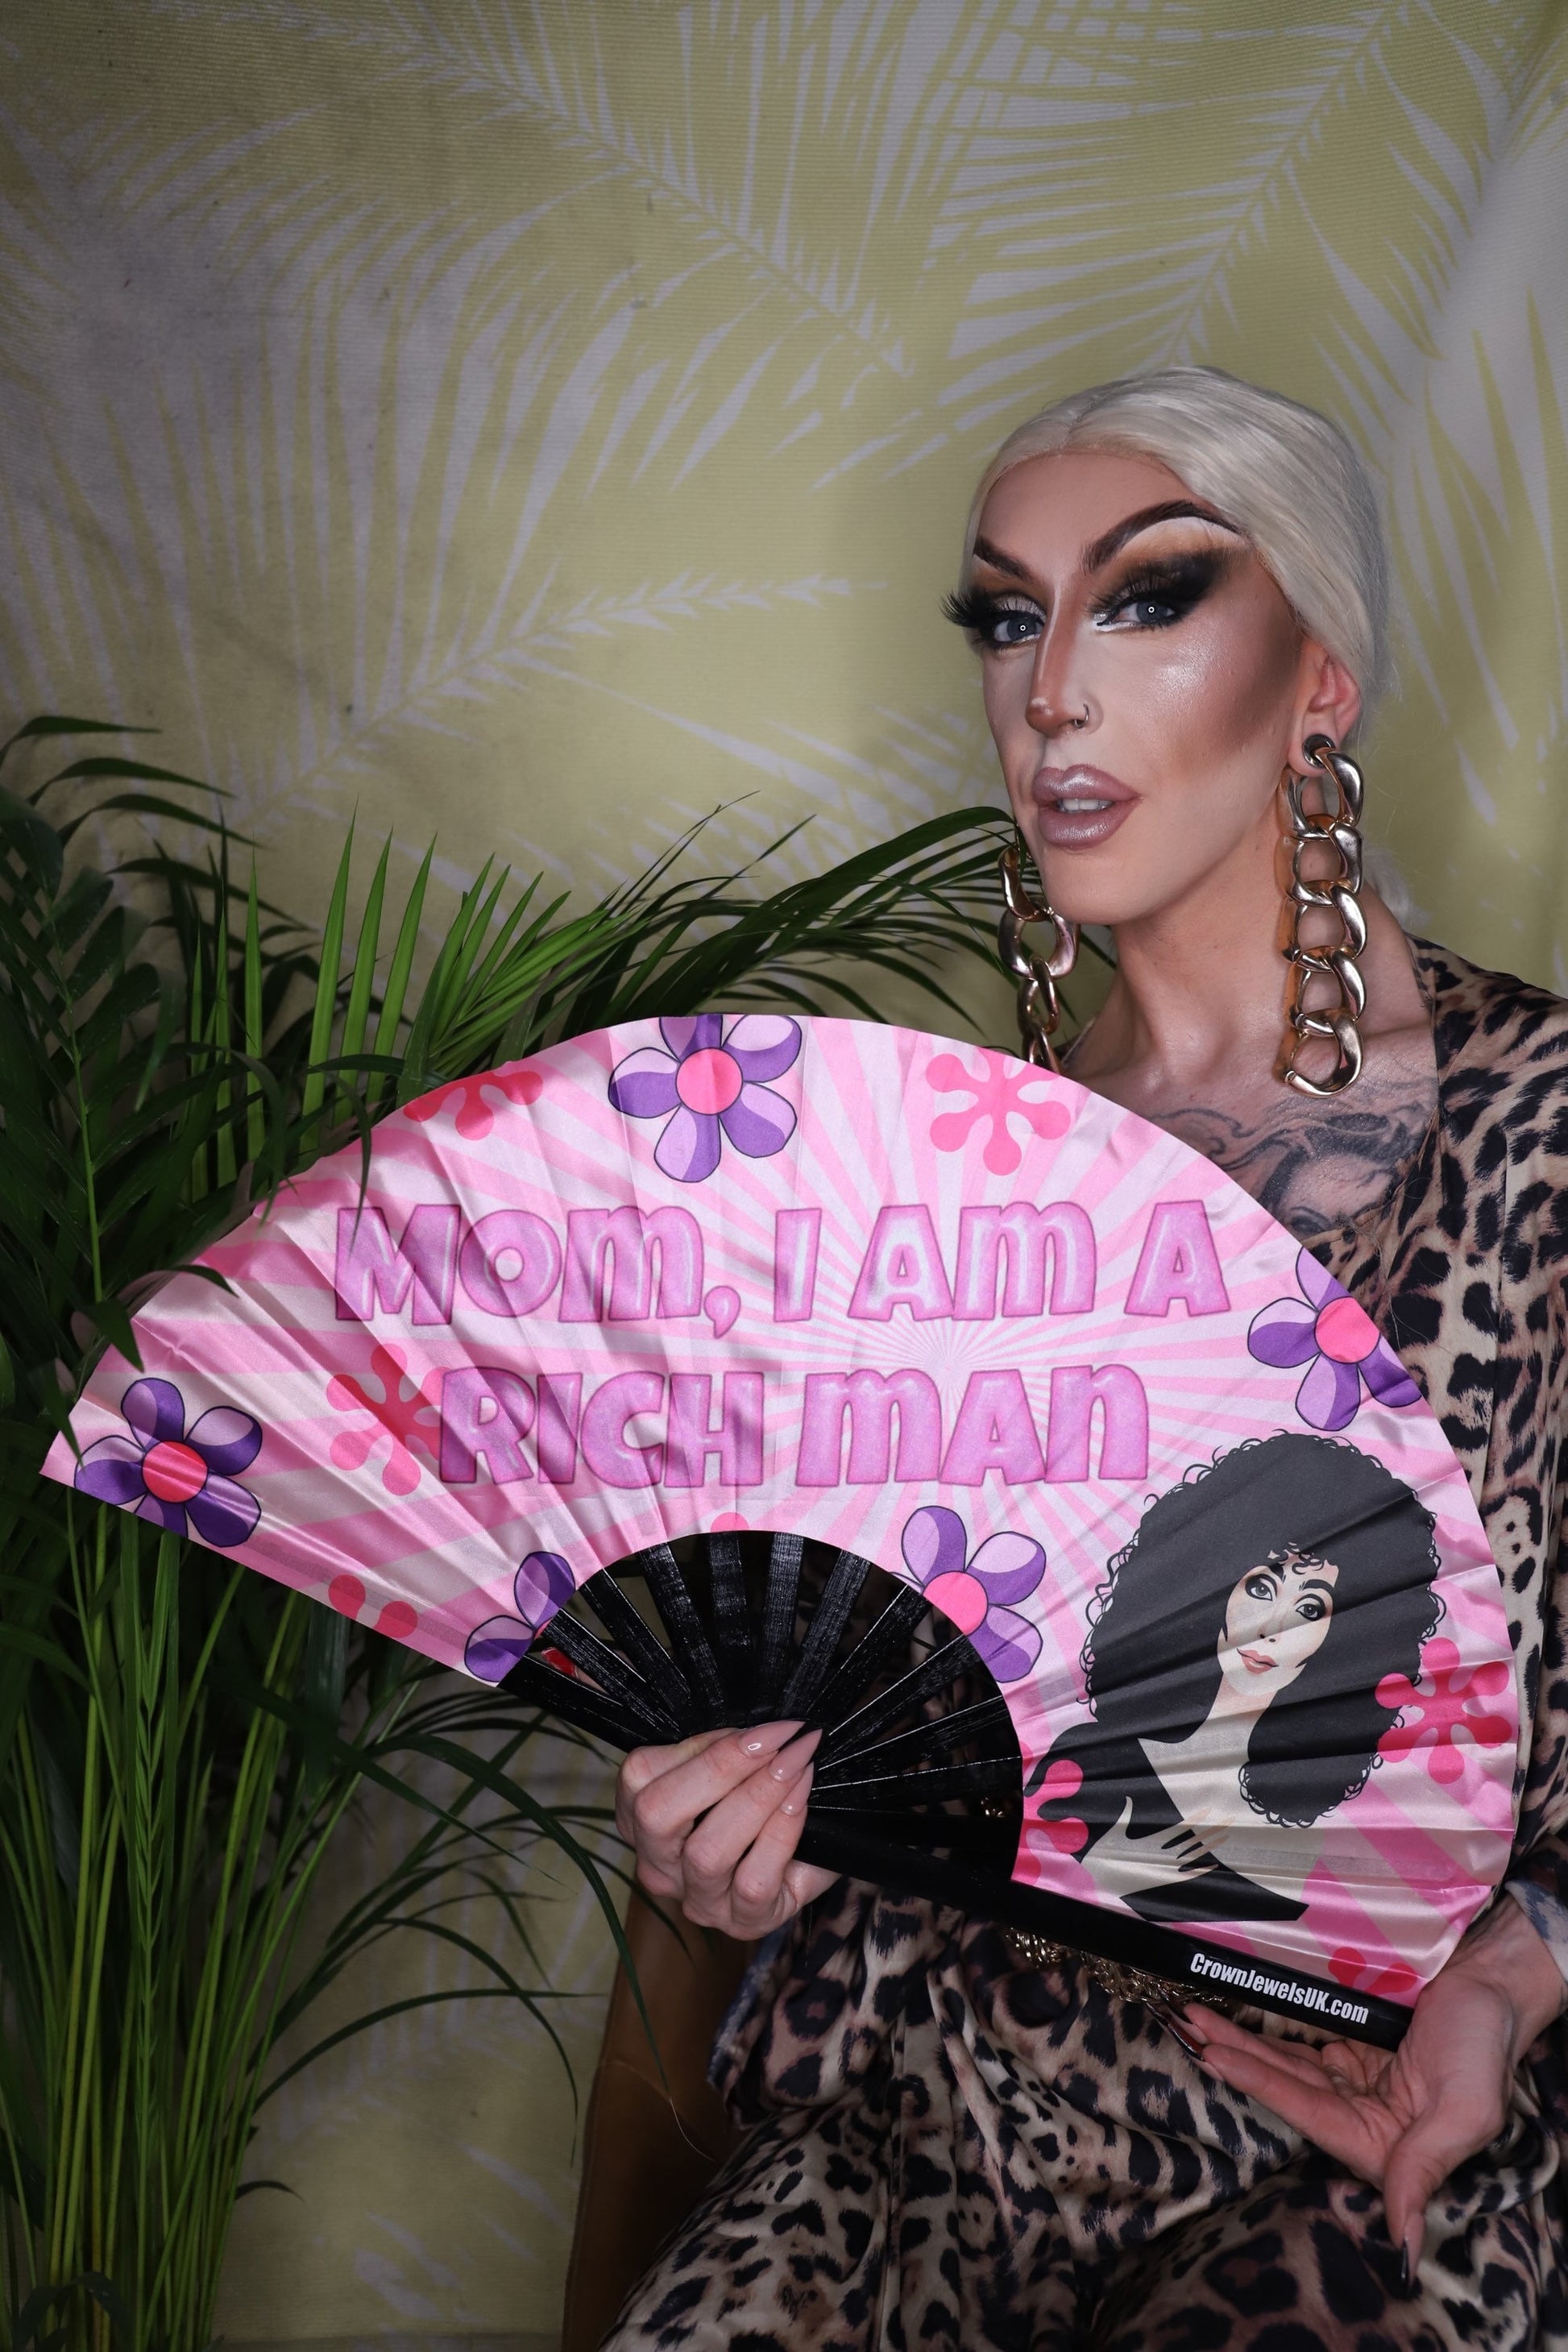 Cher mom I am a rich man Fan, Drag Queen Bamboo Hand Fan, Fans, Clack Fan, Loud Fan, Bang Fan, Alexa